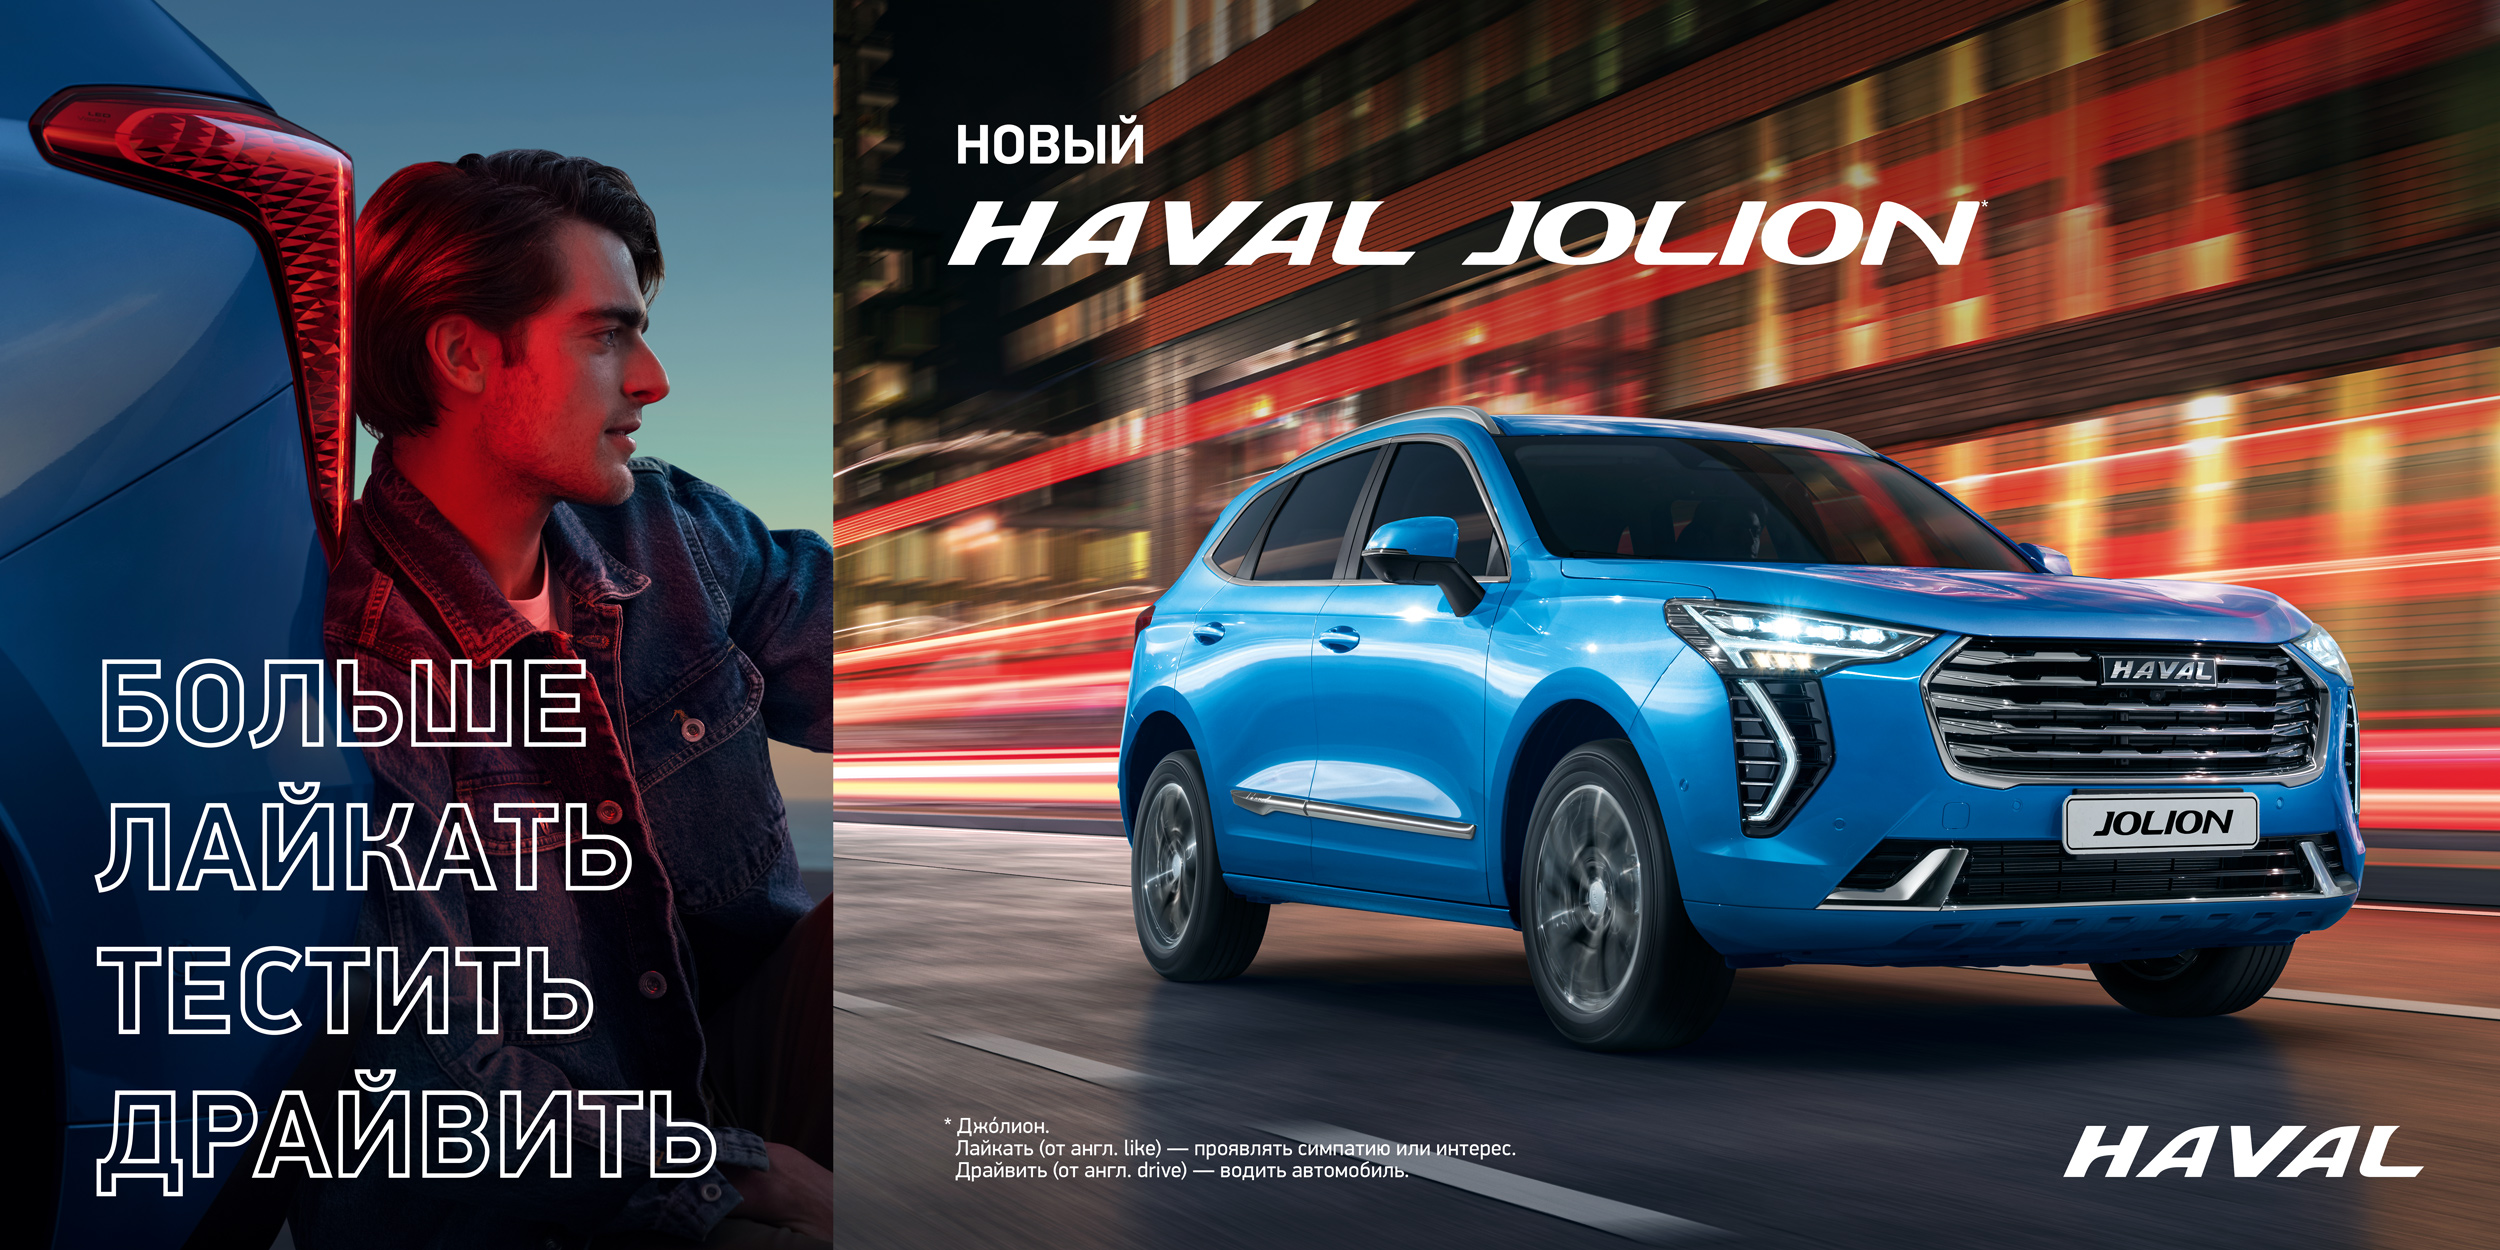 Приглашаем вас на онлайн мероприятие по запуску новой модели HAVAL JOLION!